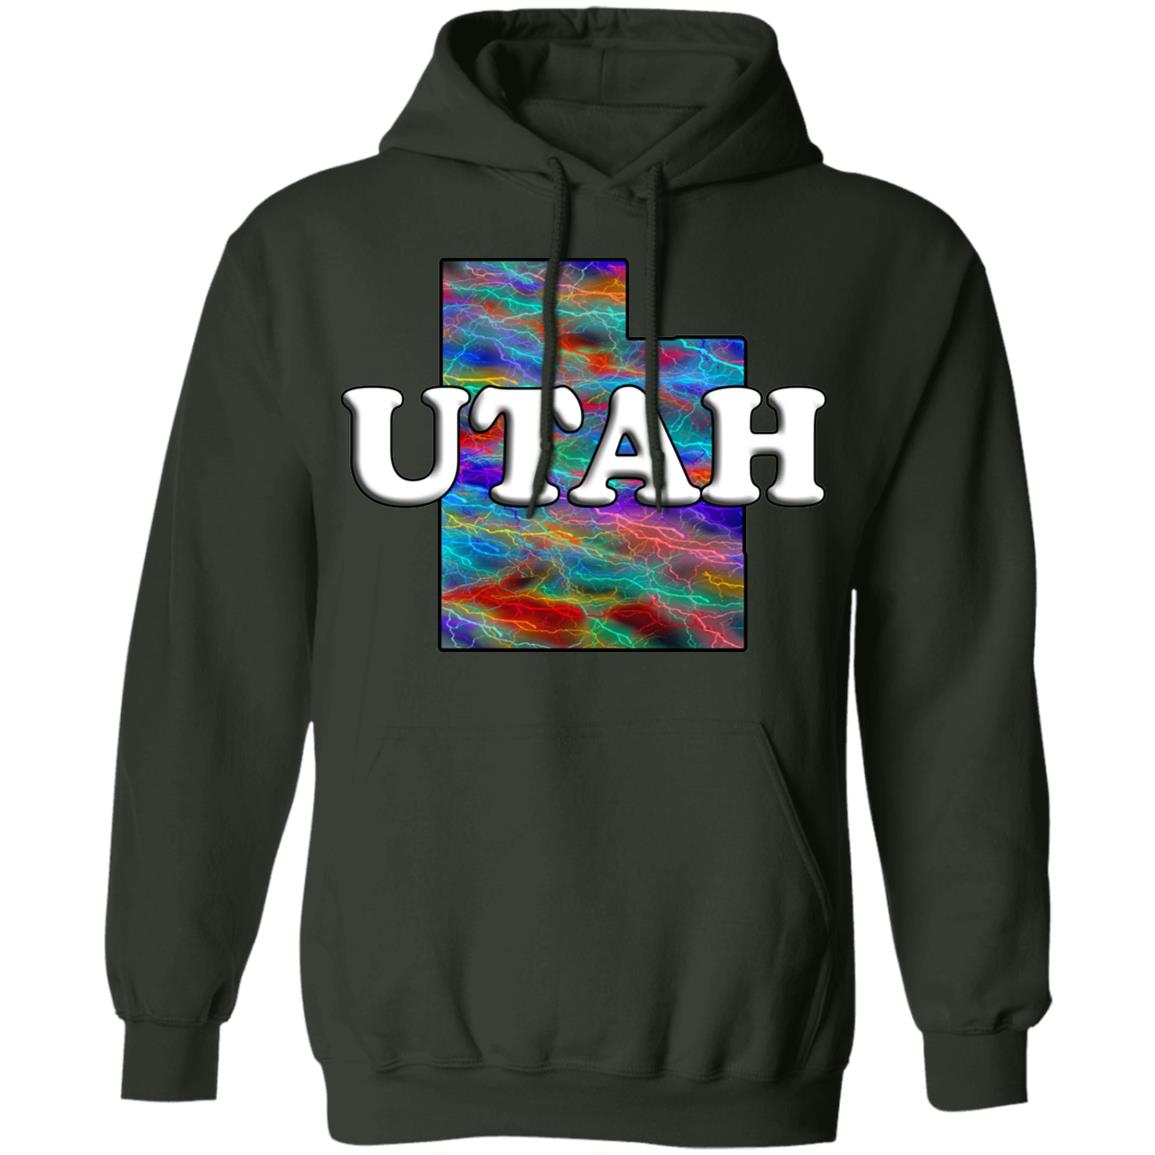 Utah Hoodie